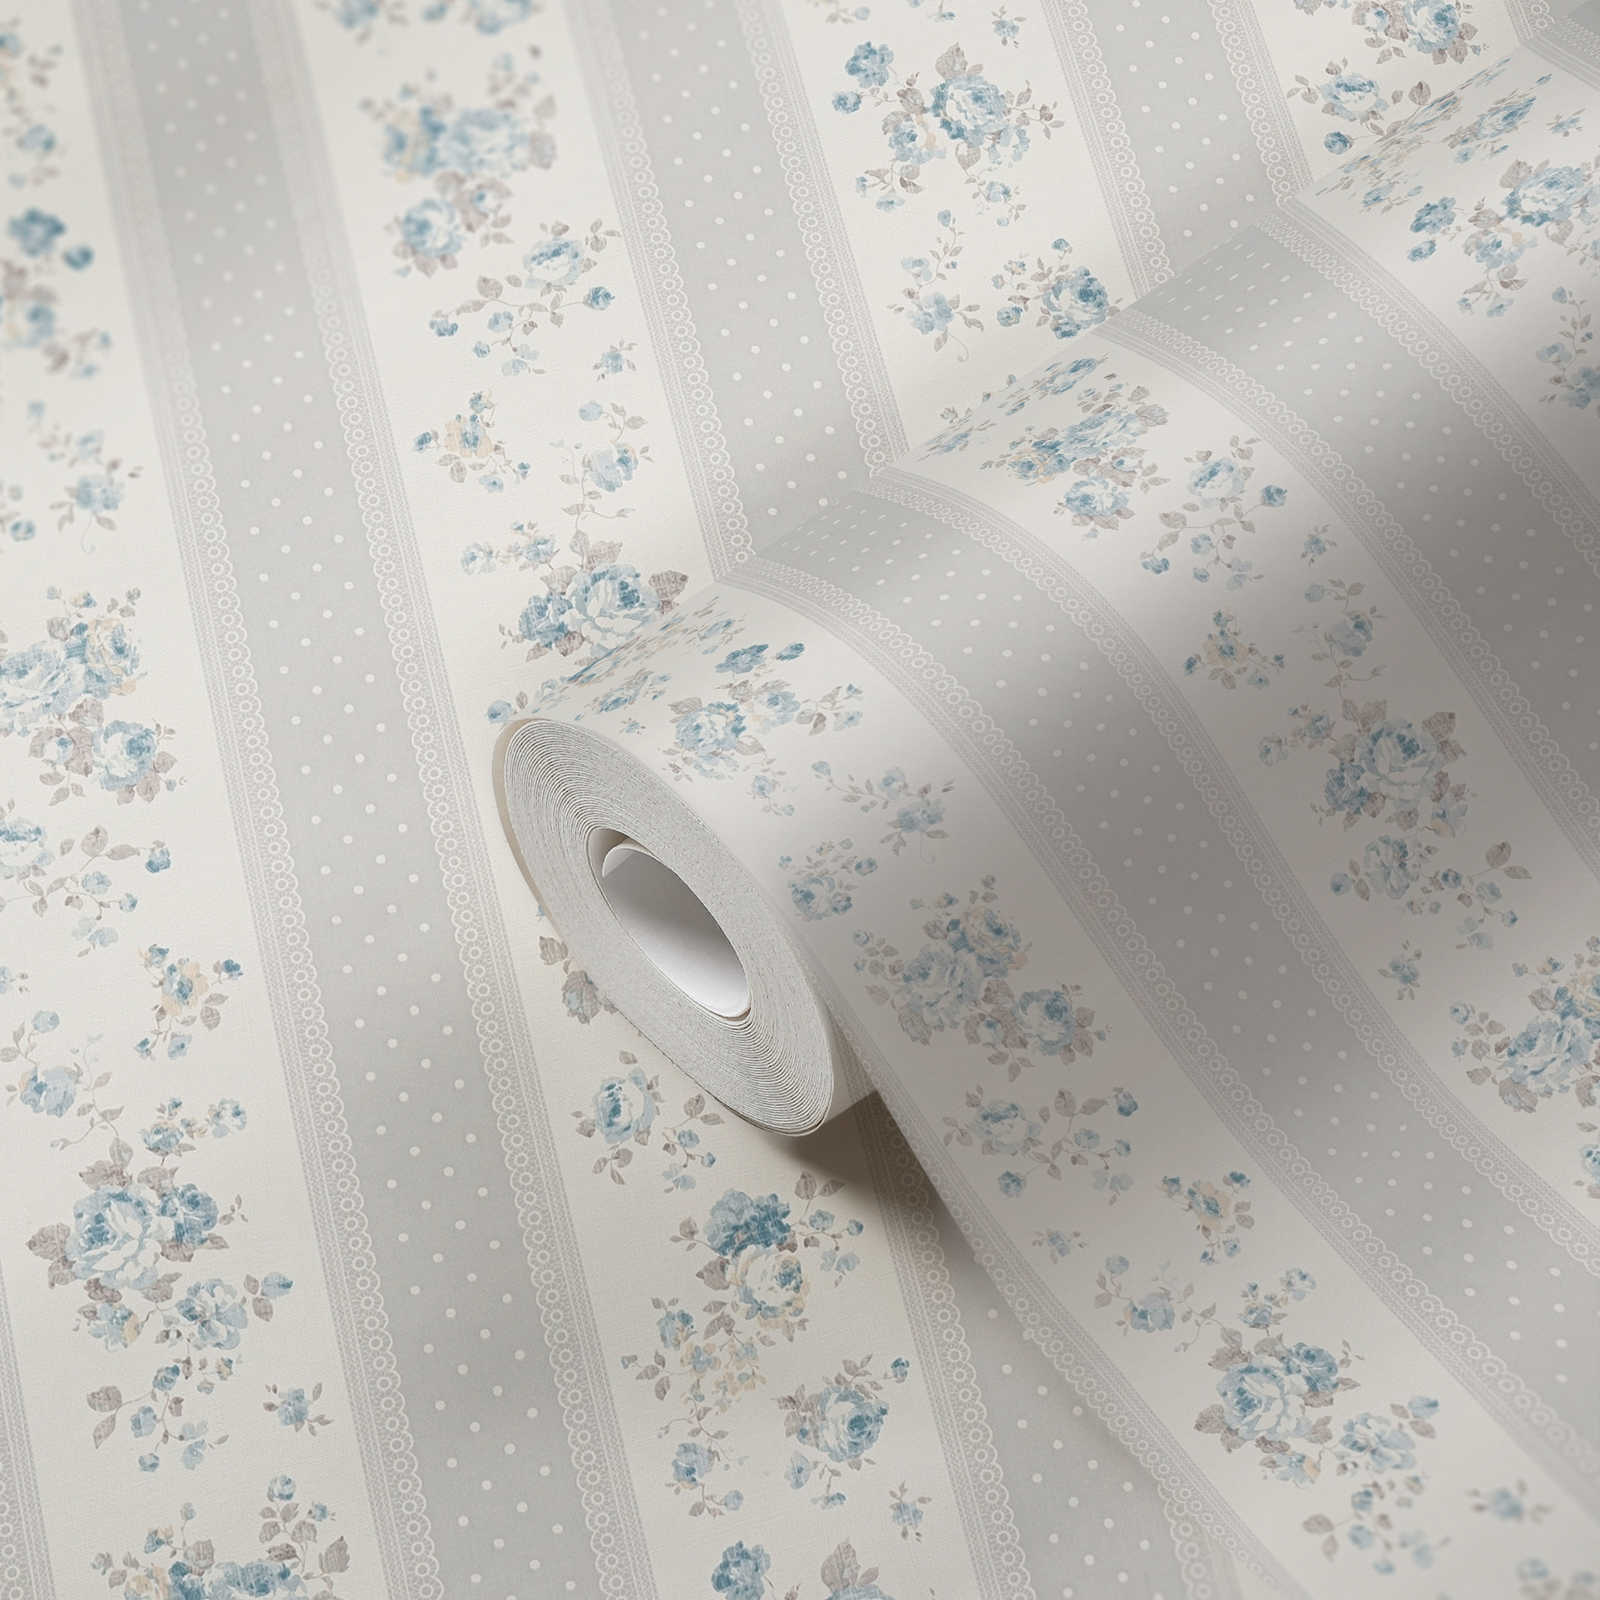             Vliestapete mit gepunkteten und floralen Streifen – Grau, Weiß, Blau
        